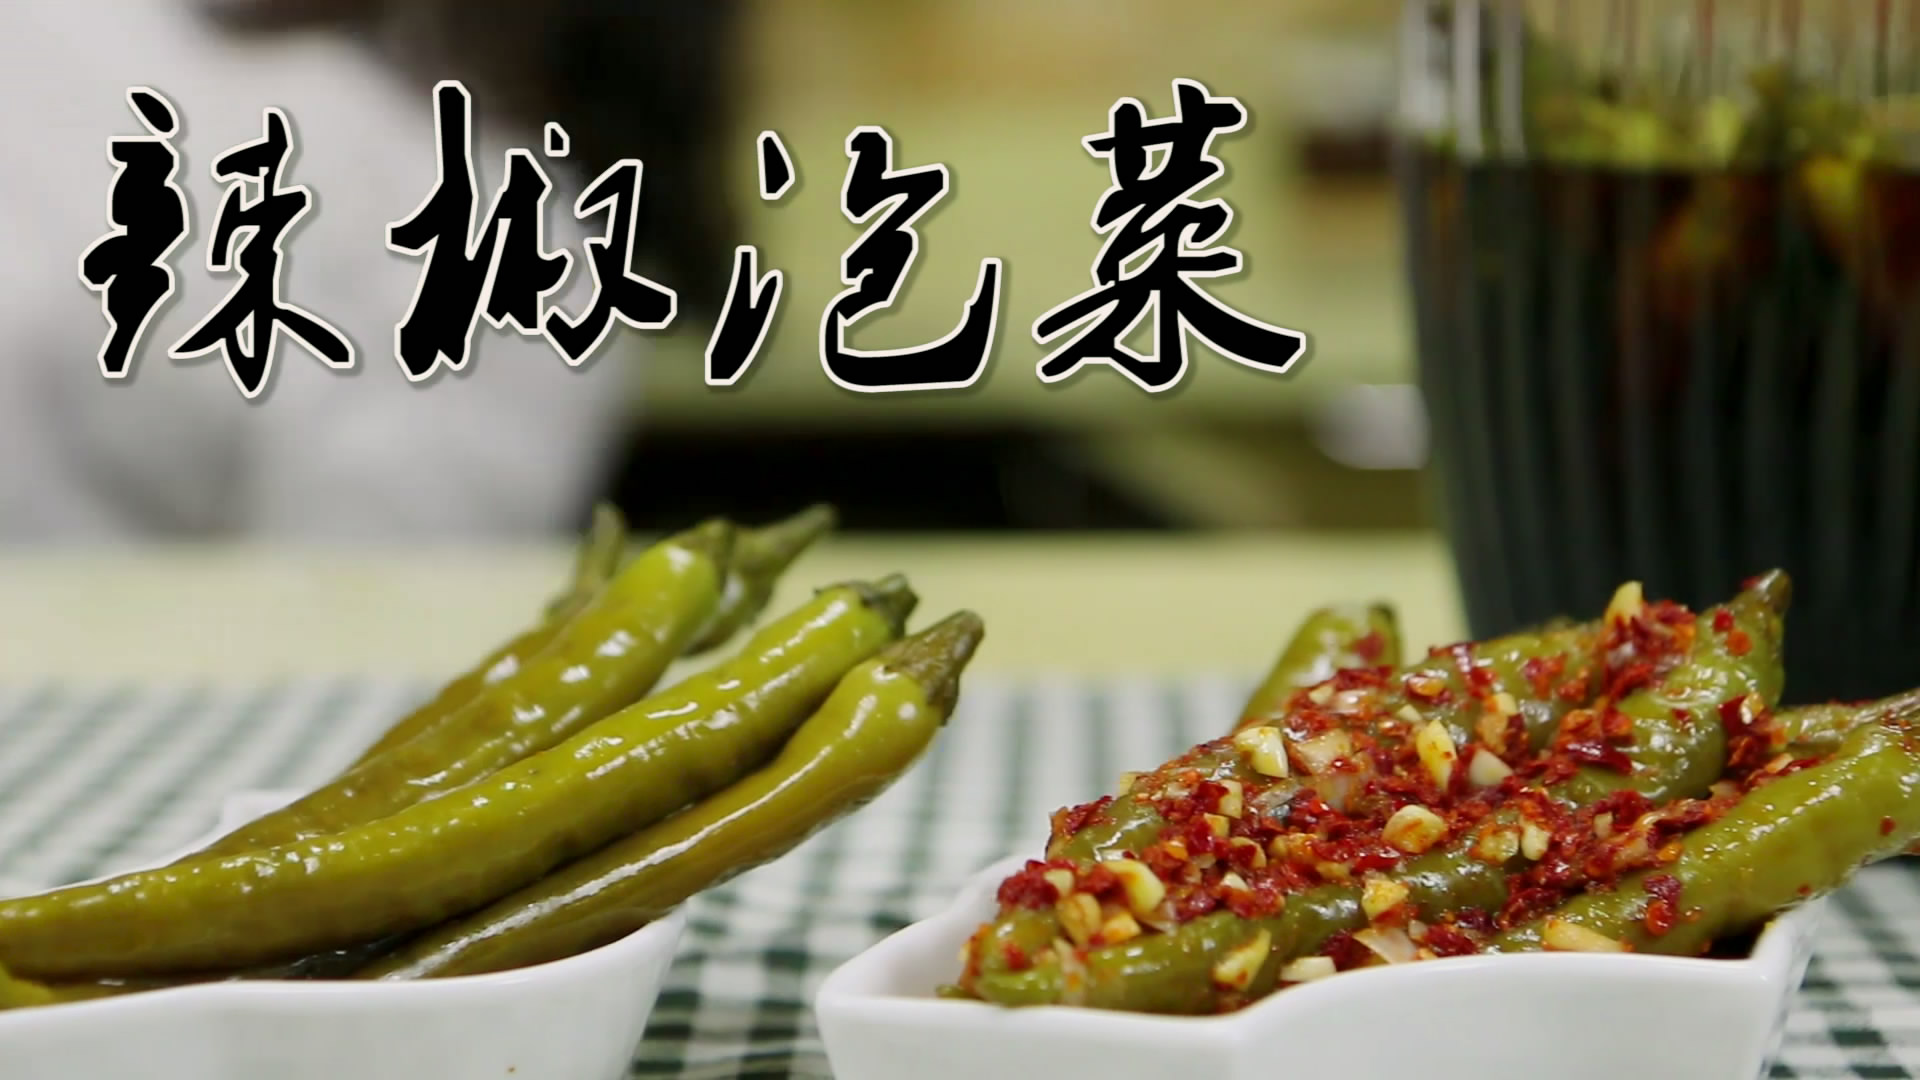 喜欢辣椒的吃货们快快学学辣椒泡菜吧的做法